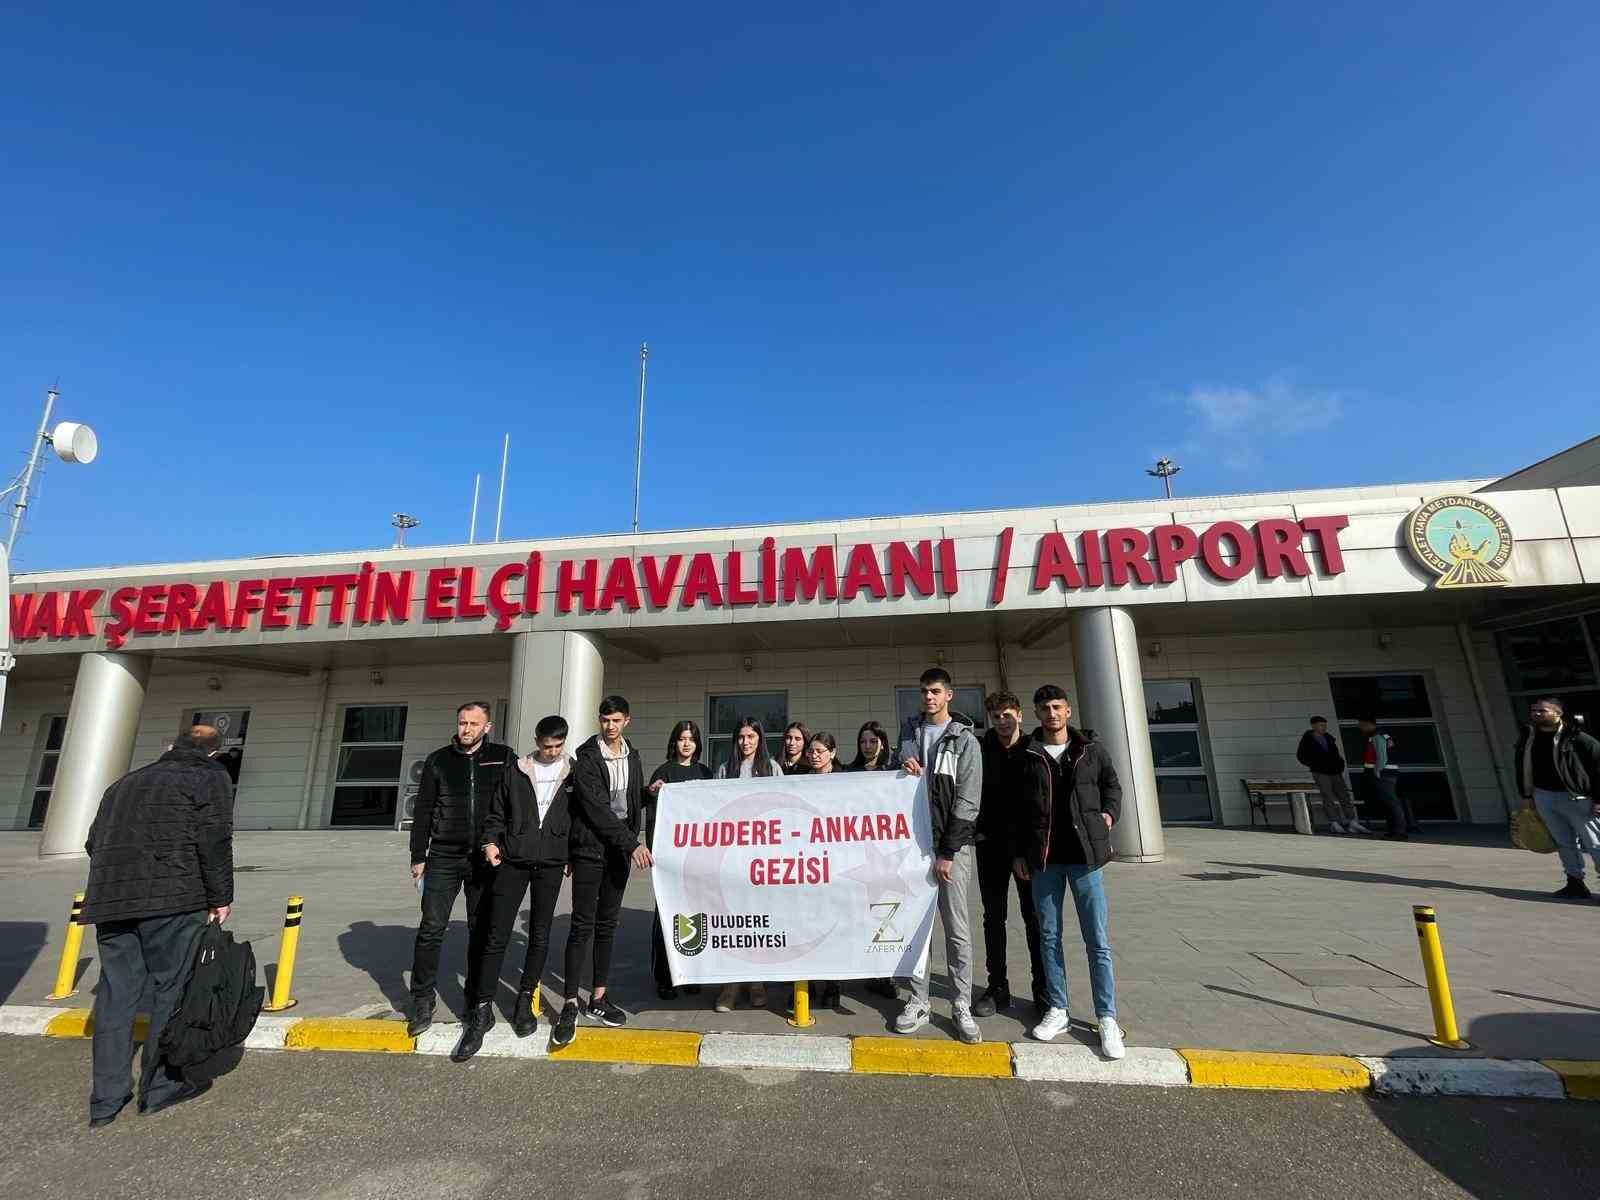 Sosyal medyadan geziye gitmek istediklerini bildiren öğrenciler, Ankara’ya gönderildi